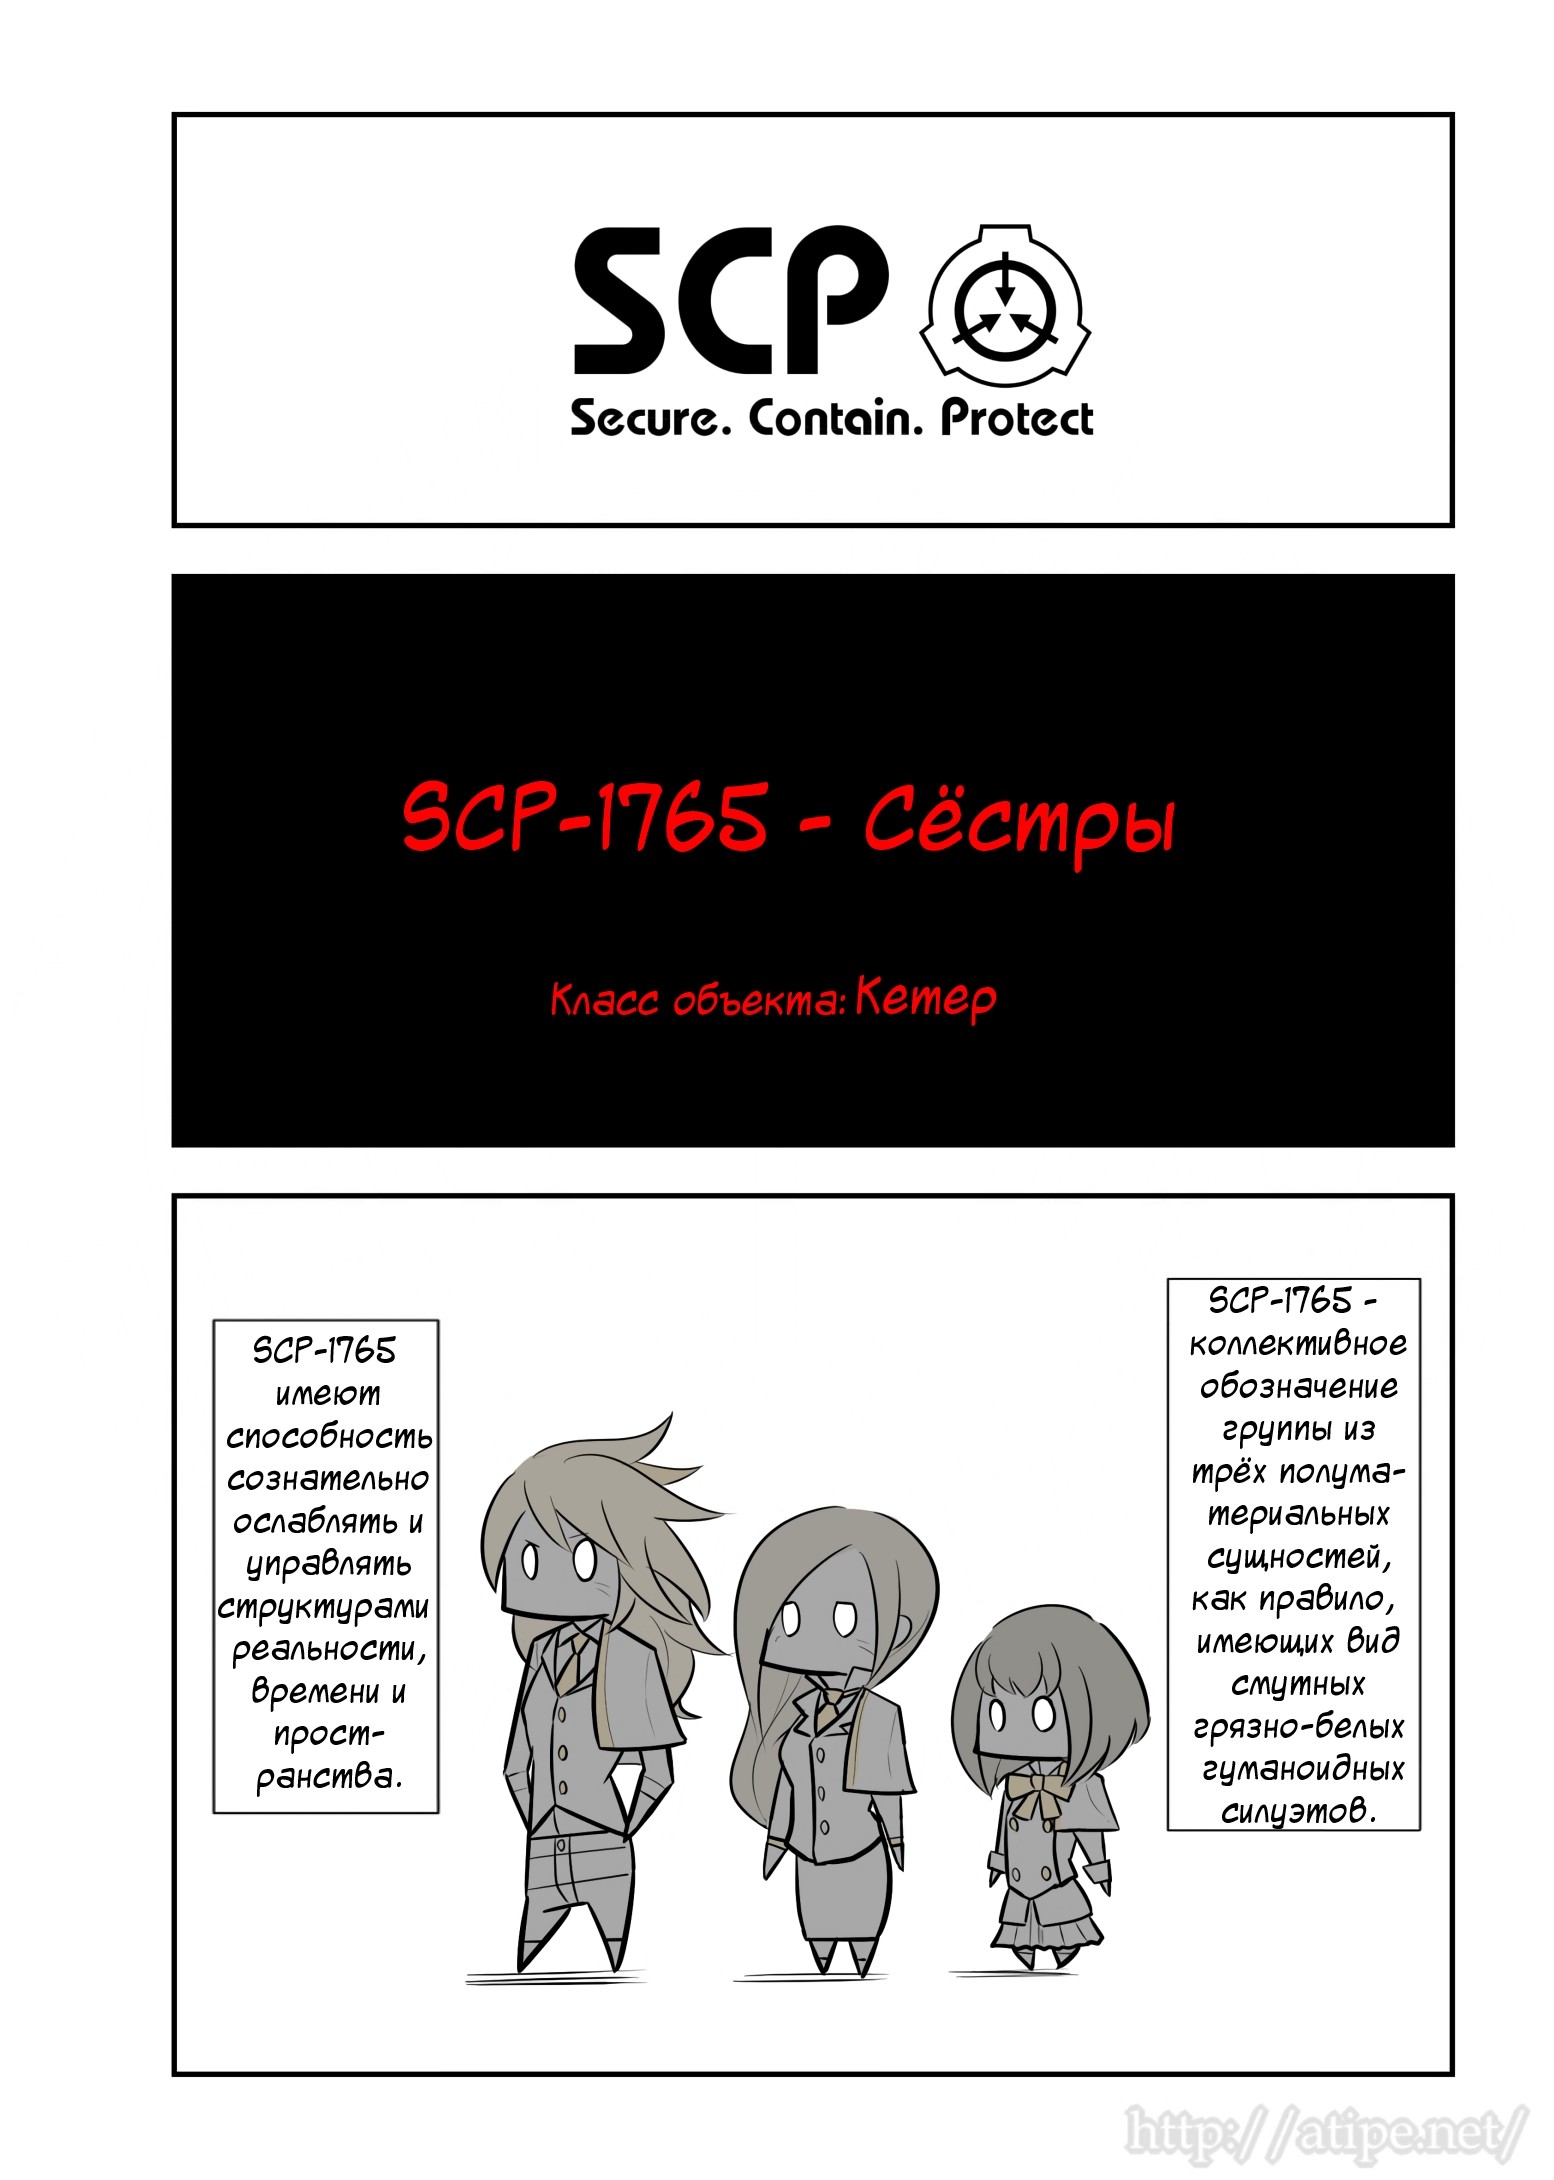 Упрощенный SCP 1 - 72 SCP-1765